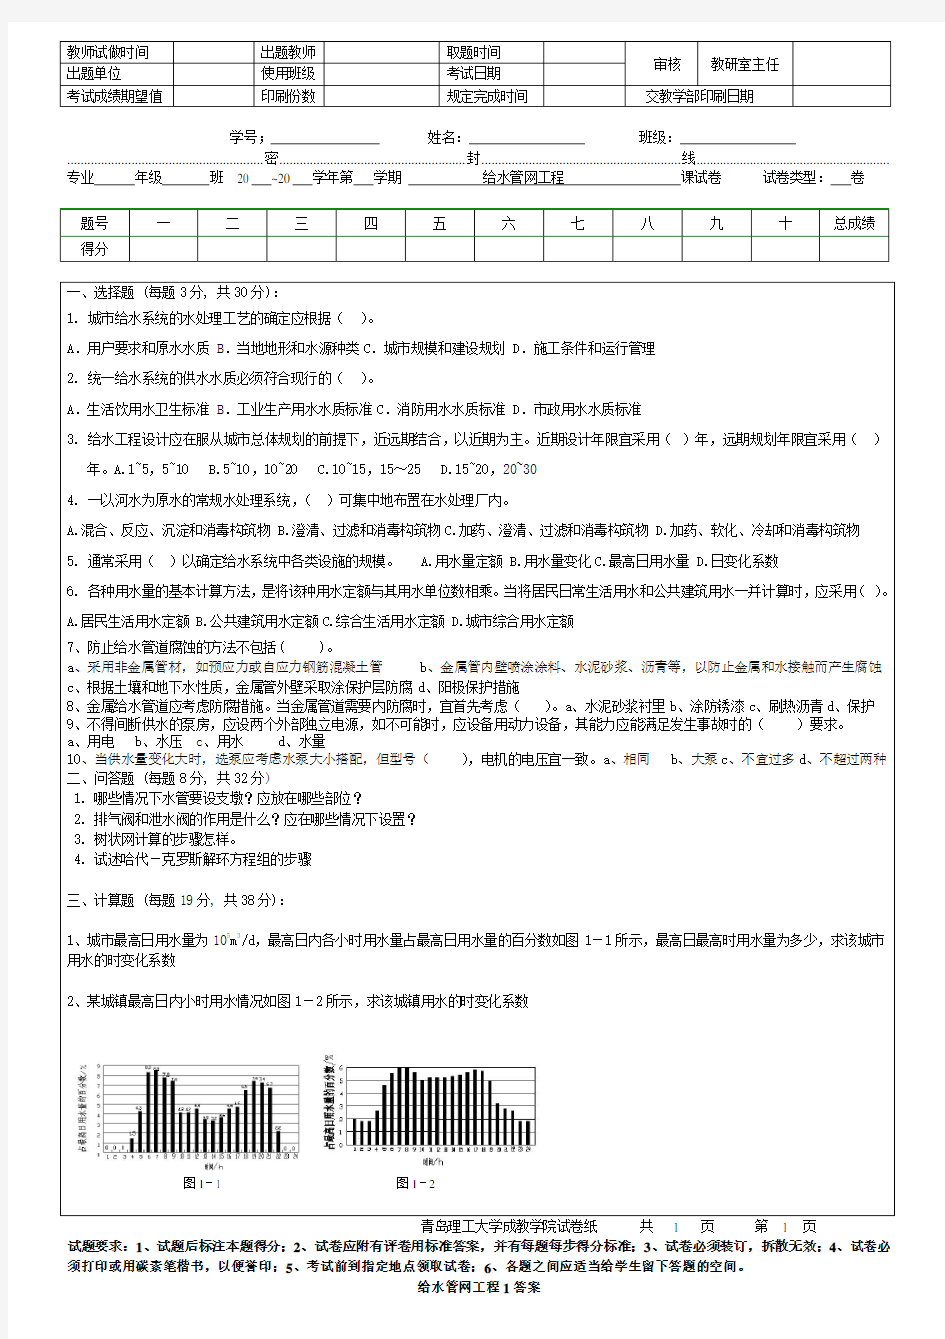 青岛理工大学给水管网工程1期末试题及参考答案